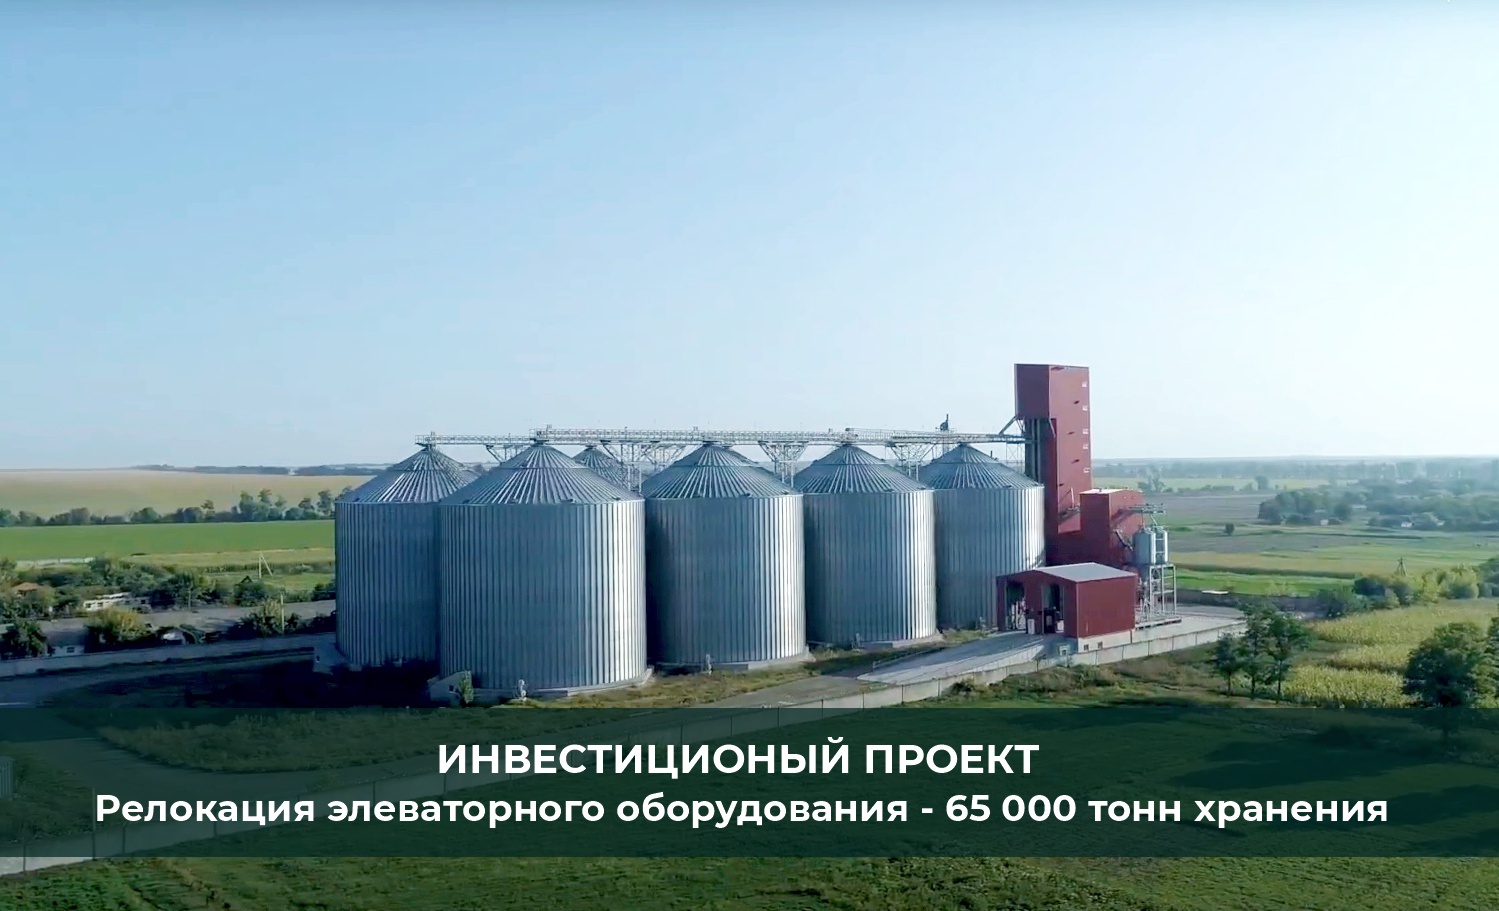 Элеватор для хранения зерновых культур 65 000 тонн с возможностью релокации оборудования